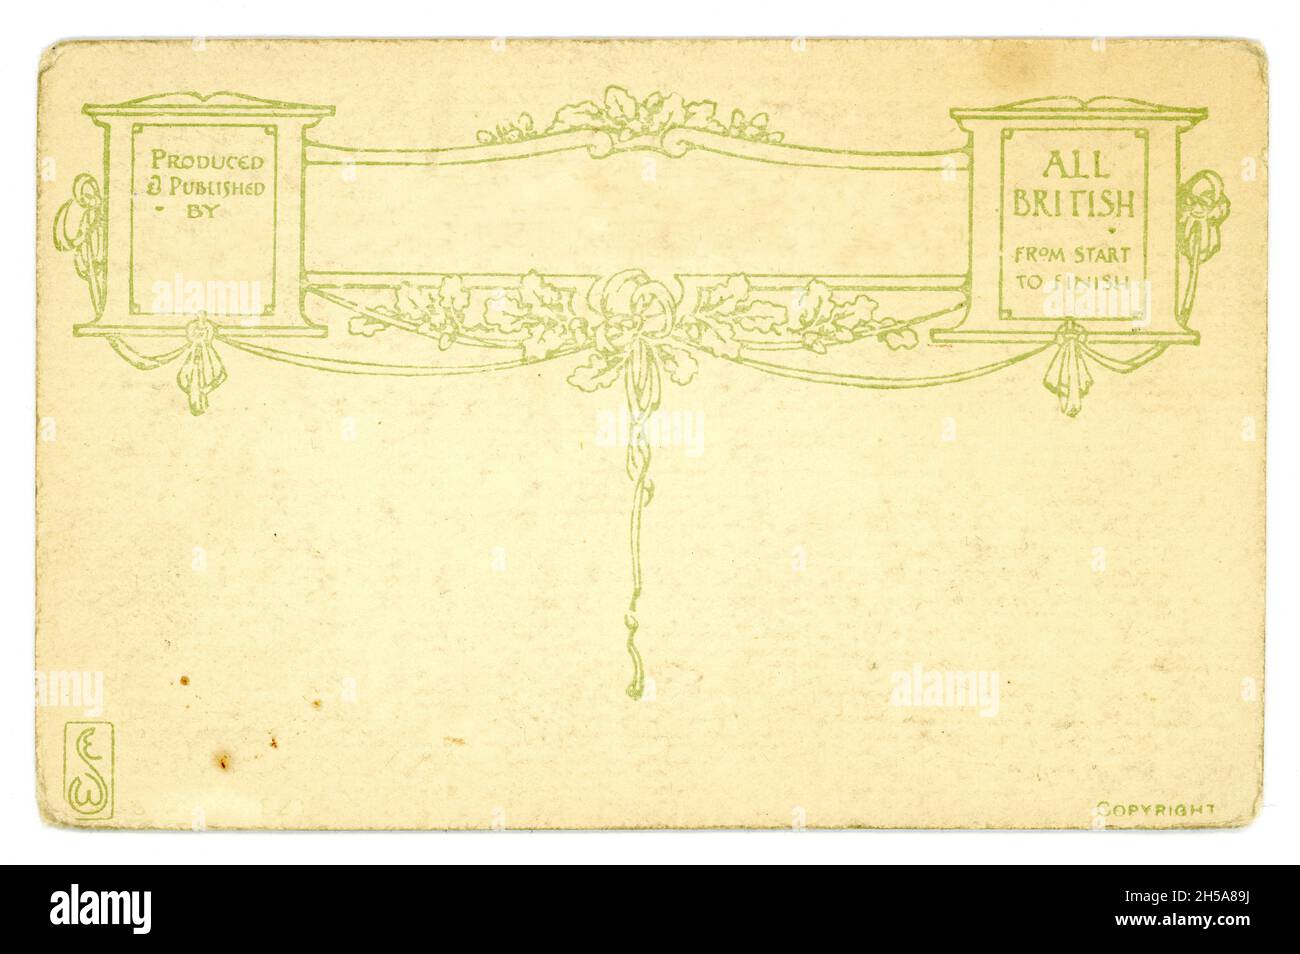 Inverse de la carte postale originale de l'ère WW1 avec un design attrayant. Espace pour le texte propre, copie.Vers 1914, Angleterre, Royaume-Uni Banque D'Images